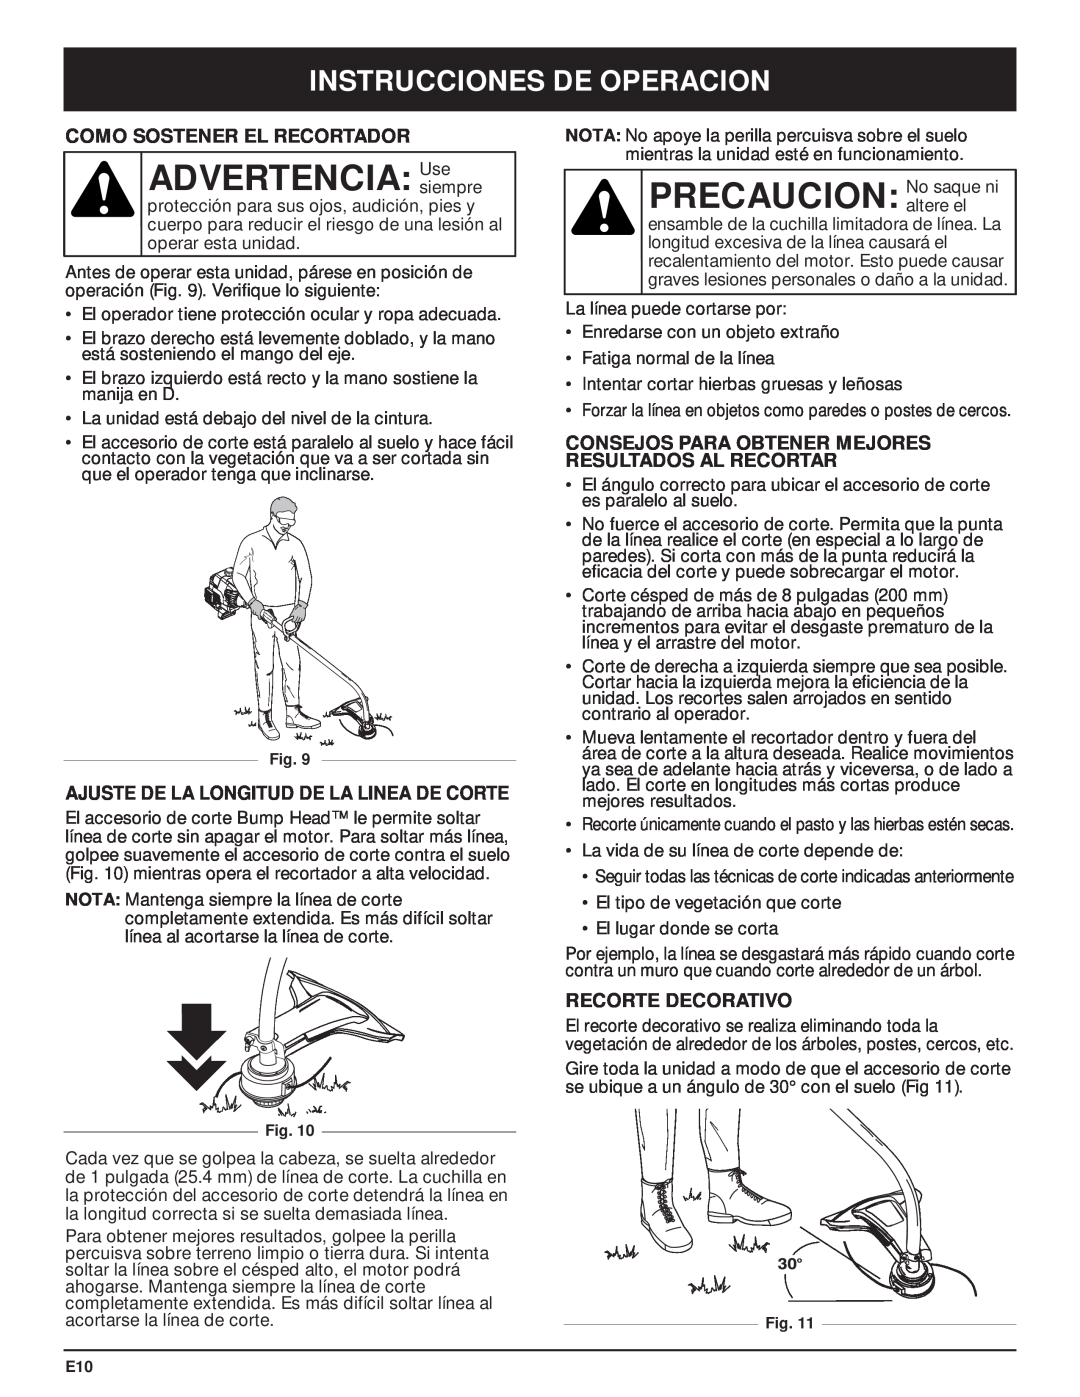 MTD MT700 manual ADVERTENCIA Usesiempre, Instrucciones De Operacion, Como Sostener El Recortador, Recorte Decorativo 